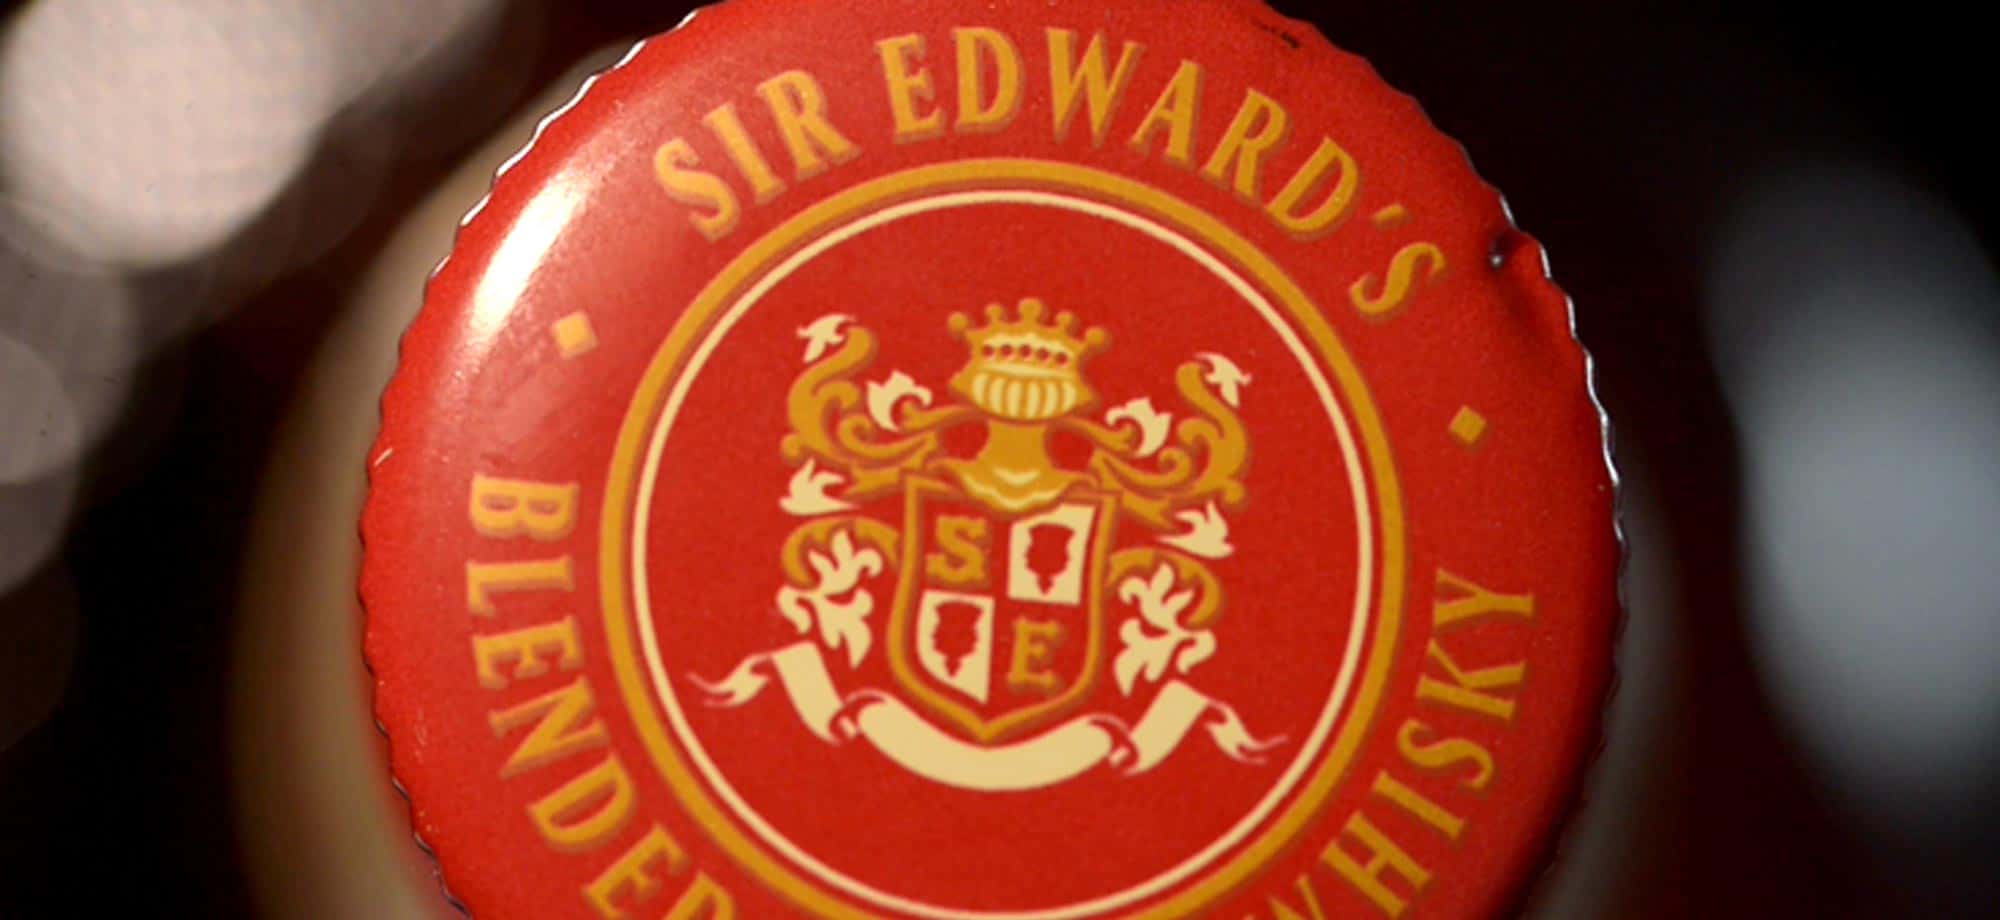 Simplicité de la dégustation du whisky - Whisky Sir Edward's